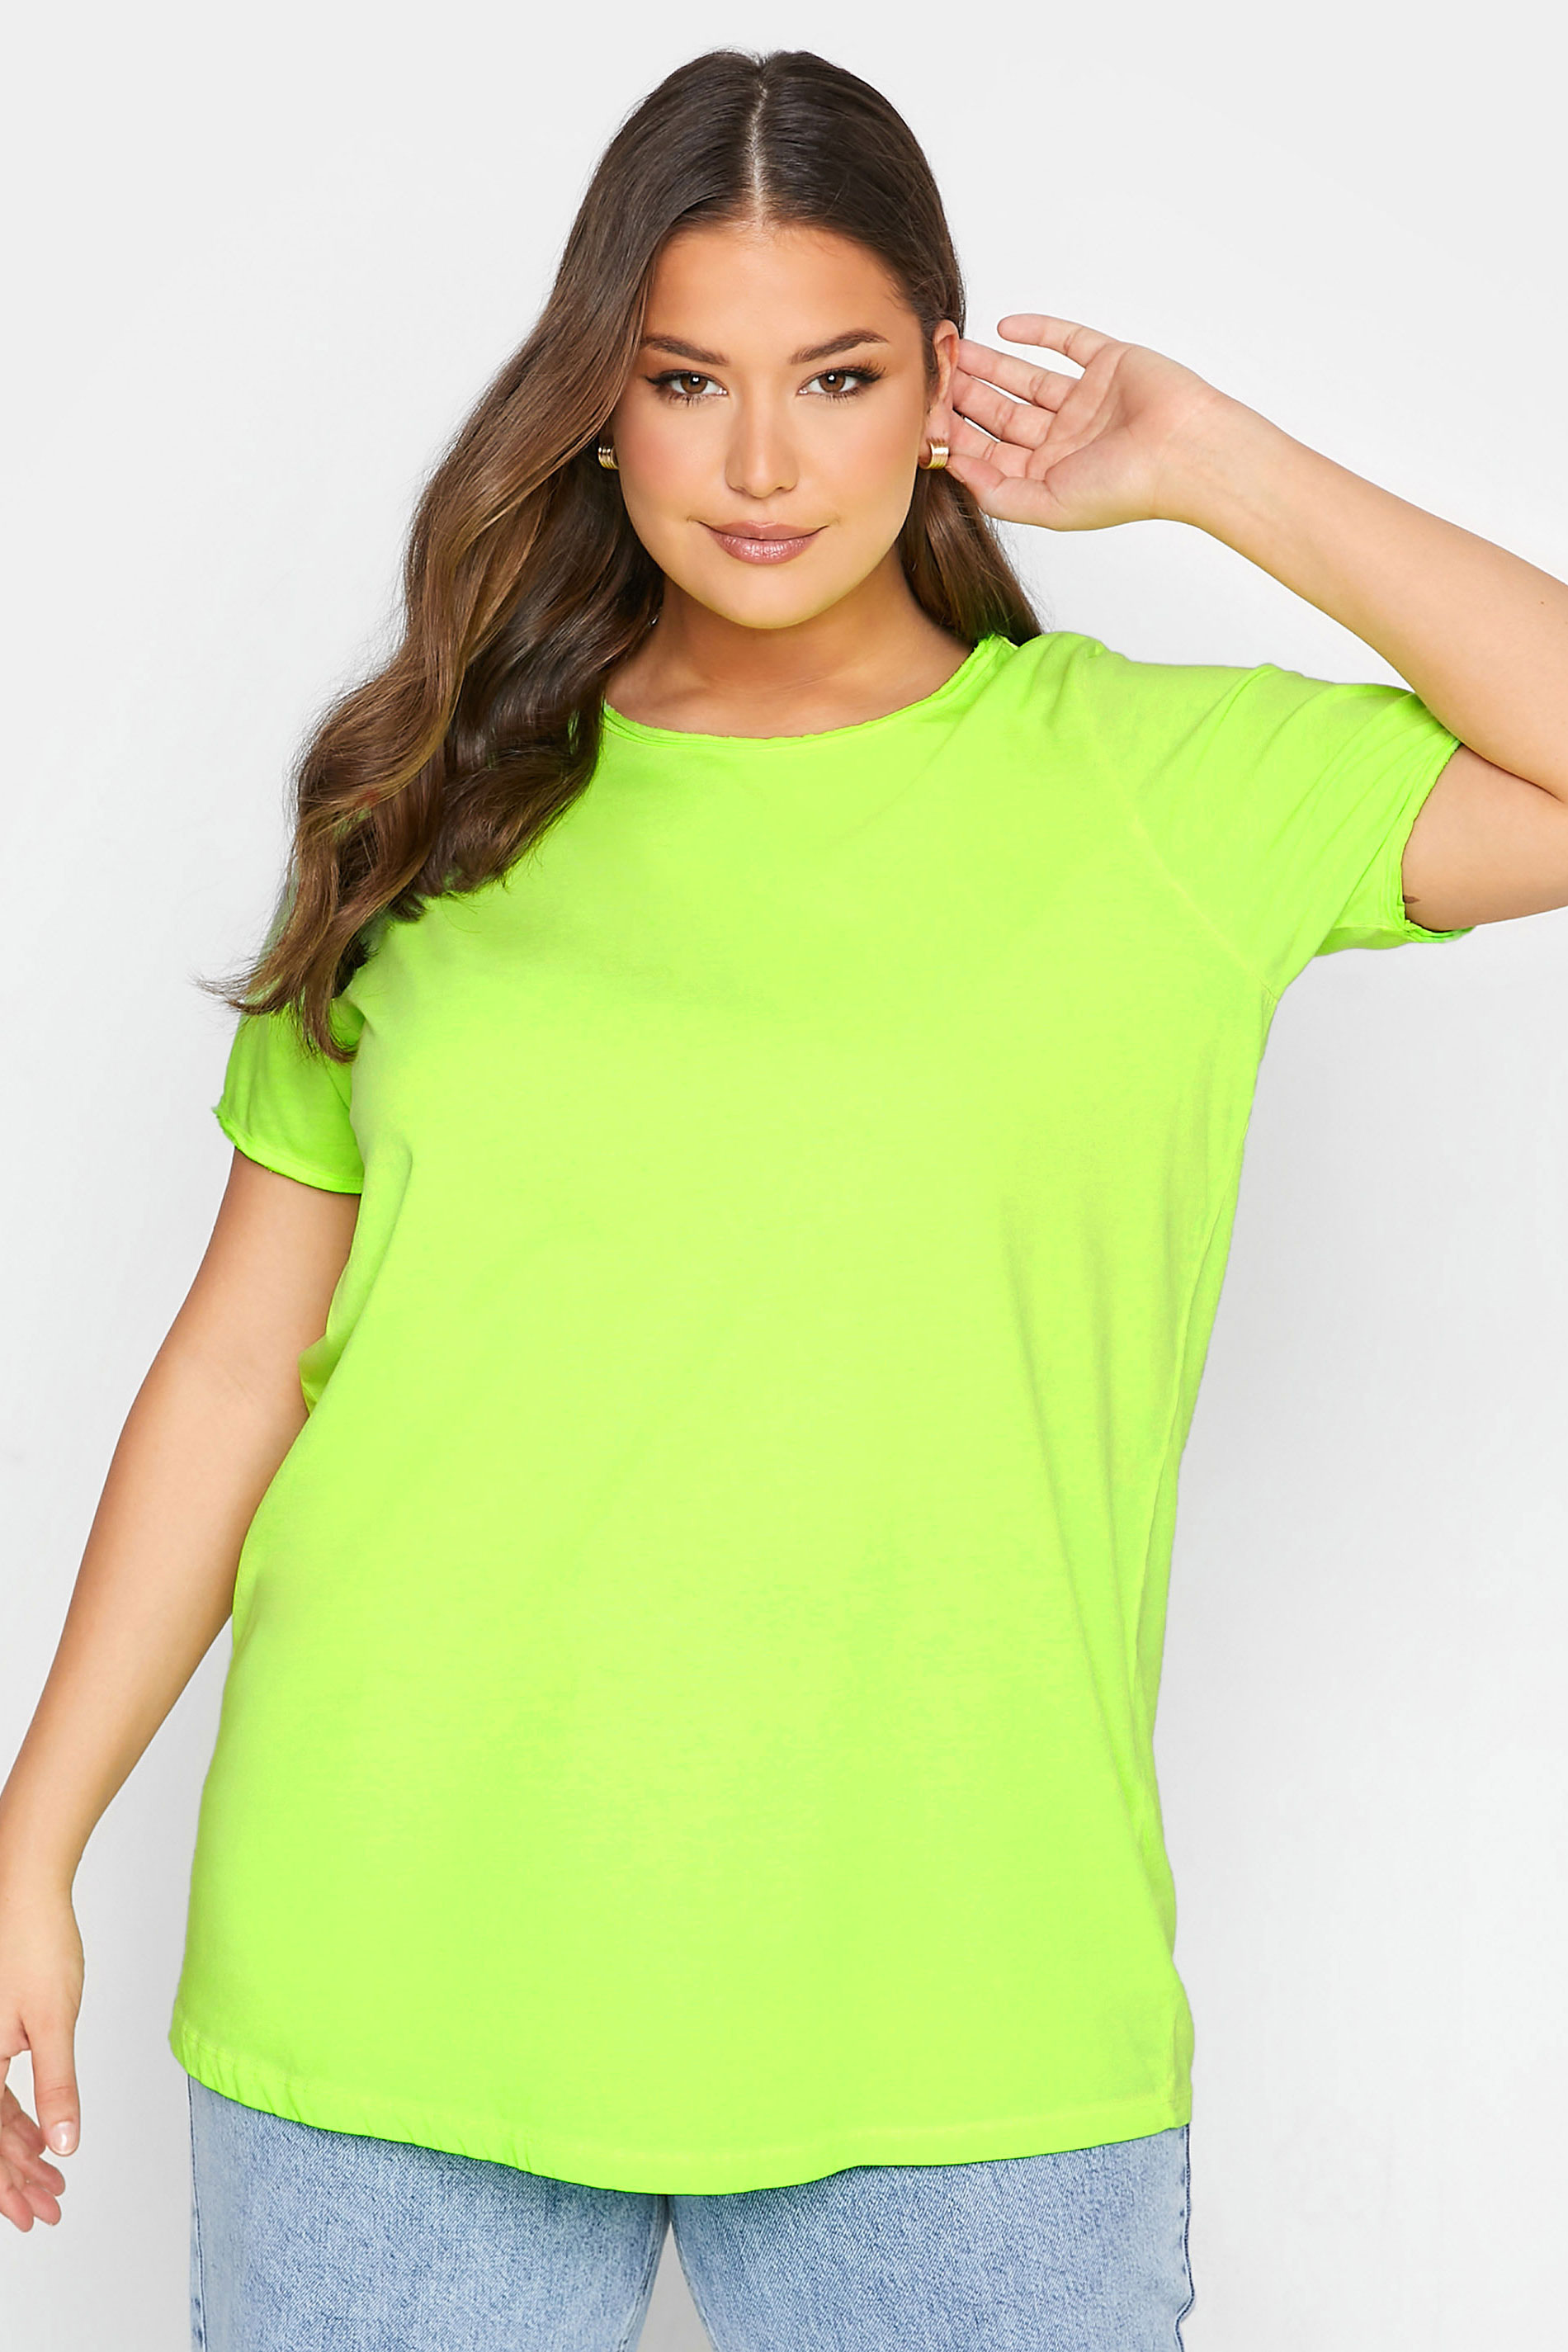 Grande taille  Tops Grande taille  T-Shirts Basiques & Débardeurs | T-Shirt Vert Fluo Manches Courtes Effilochées - TN36968